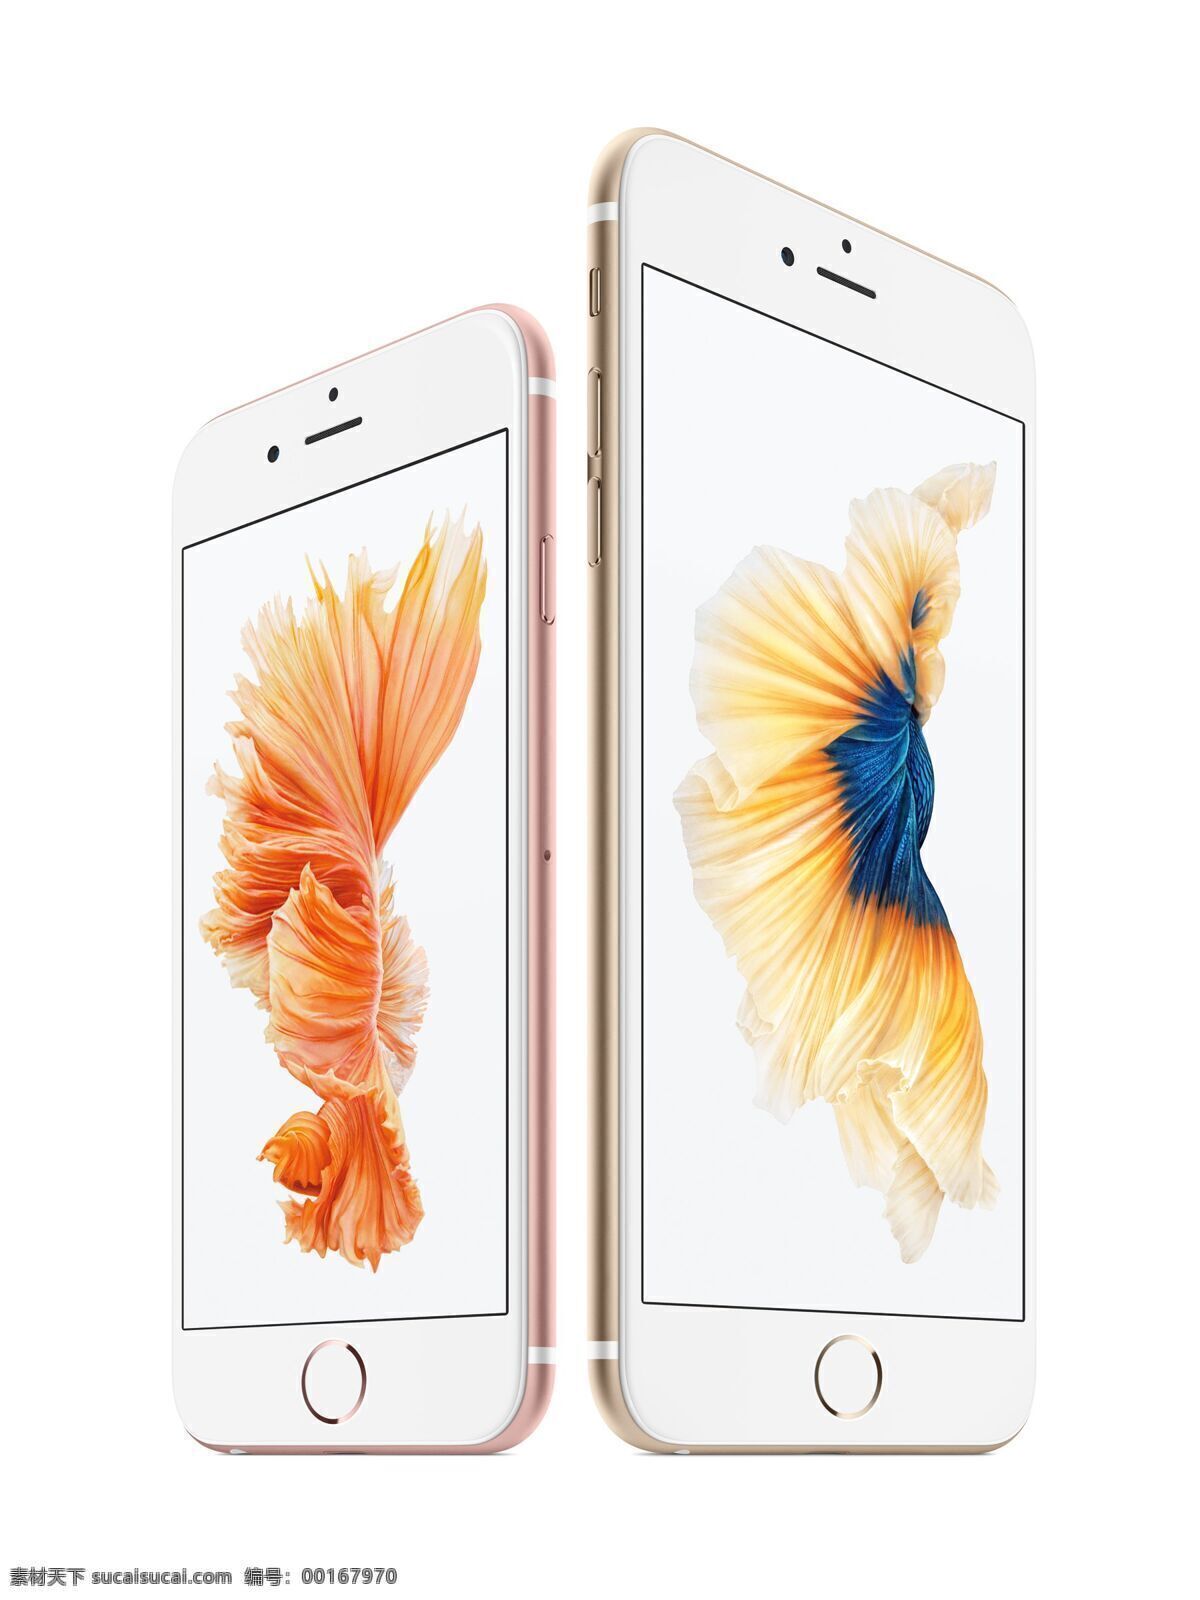 苹果 iphone6s iphone 6s plus 时尚 旗舰手机 美国 手机 通信器材 数码家电 数码产品 苹果手机 apple 设备 苹果产品 现代科技